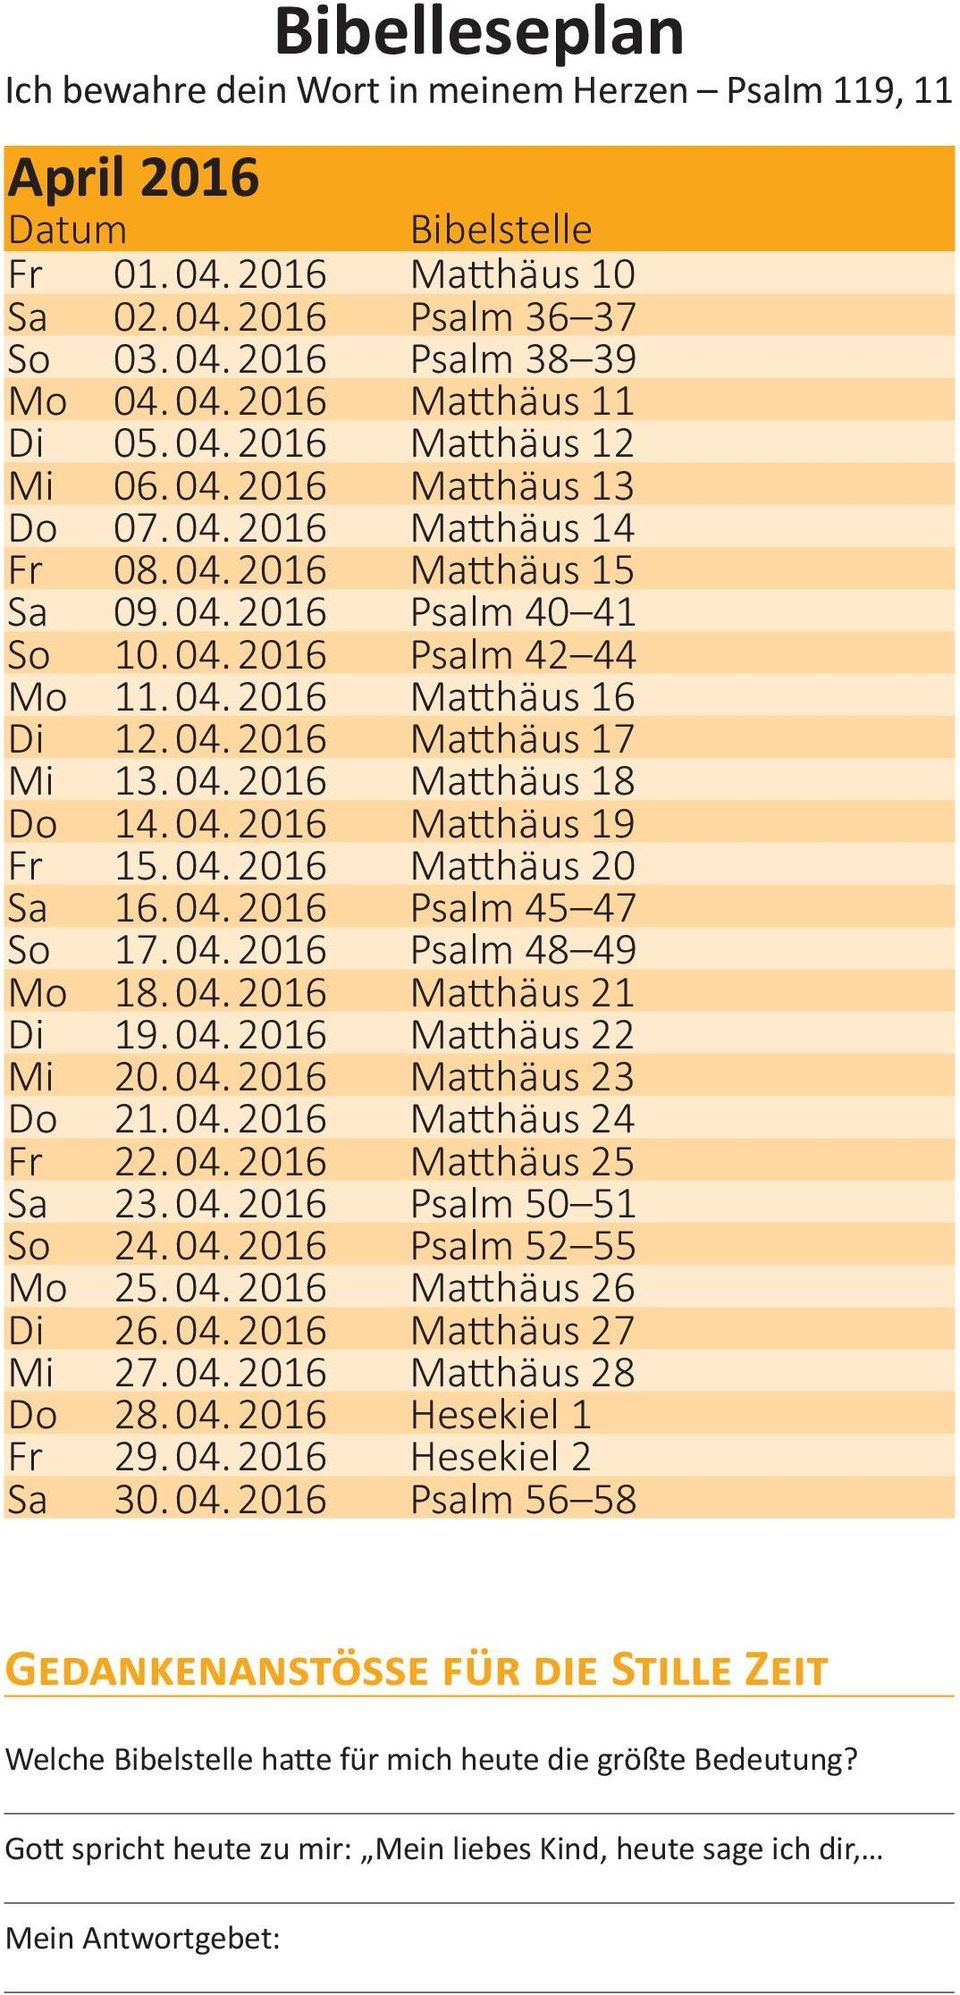 04. 2016 Psalm 45 47 So 17. 04. 2016 Psalm 48 49 Mo 18. 04. 2016 Matthäus 21 Di 19. 04. 2016 Matthäus 22 Mi 20. 04. 2016 Matthäus 23 Do 21. 04. 2016 Matthäus 24 Fr 22. 04. 2016 Matthäus 25 Sa 23. 04. 2016 Psalm 50 51 So 24.